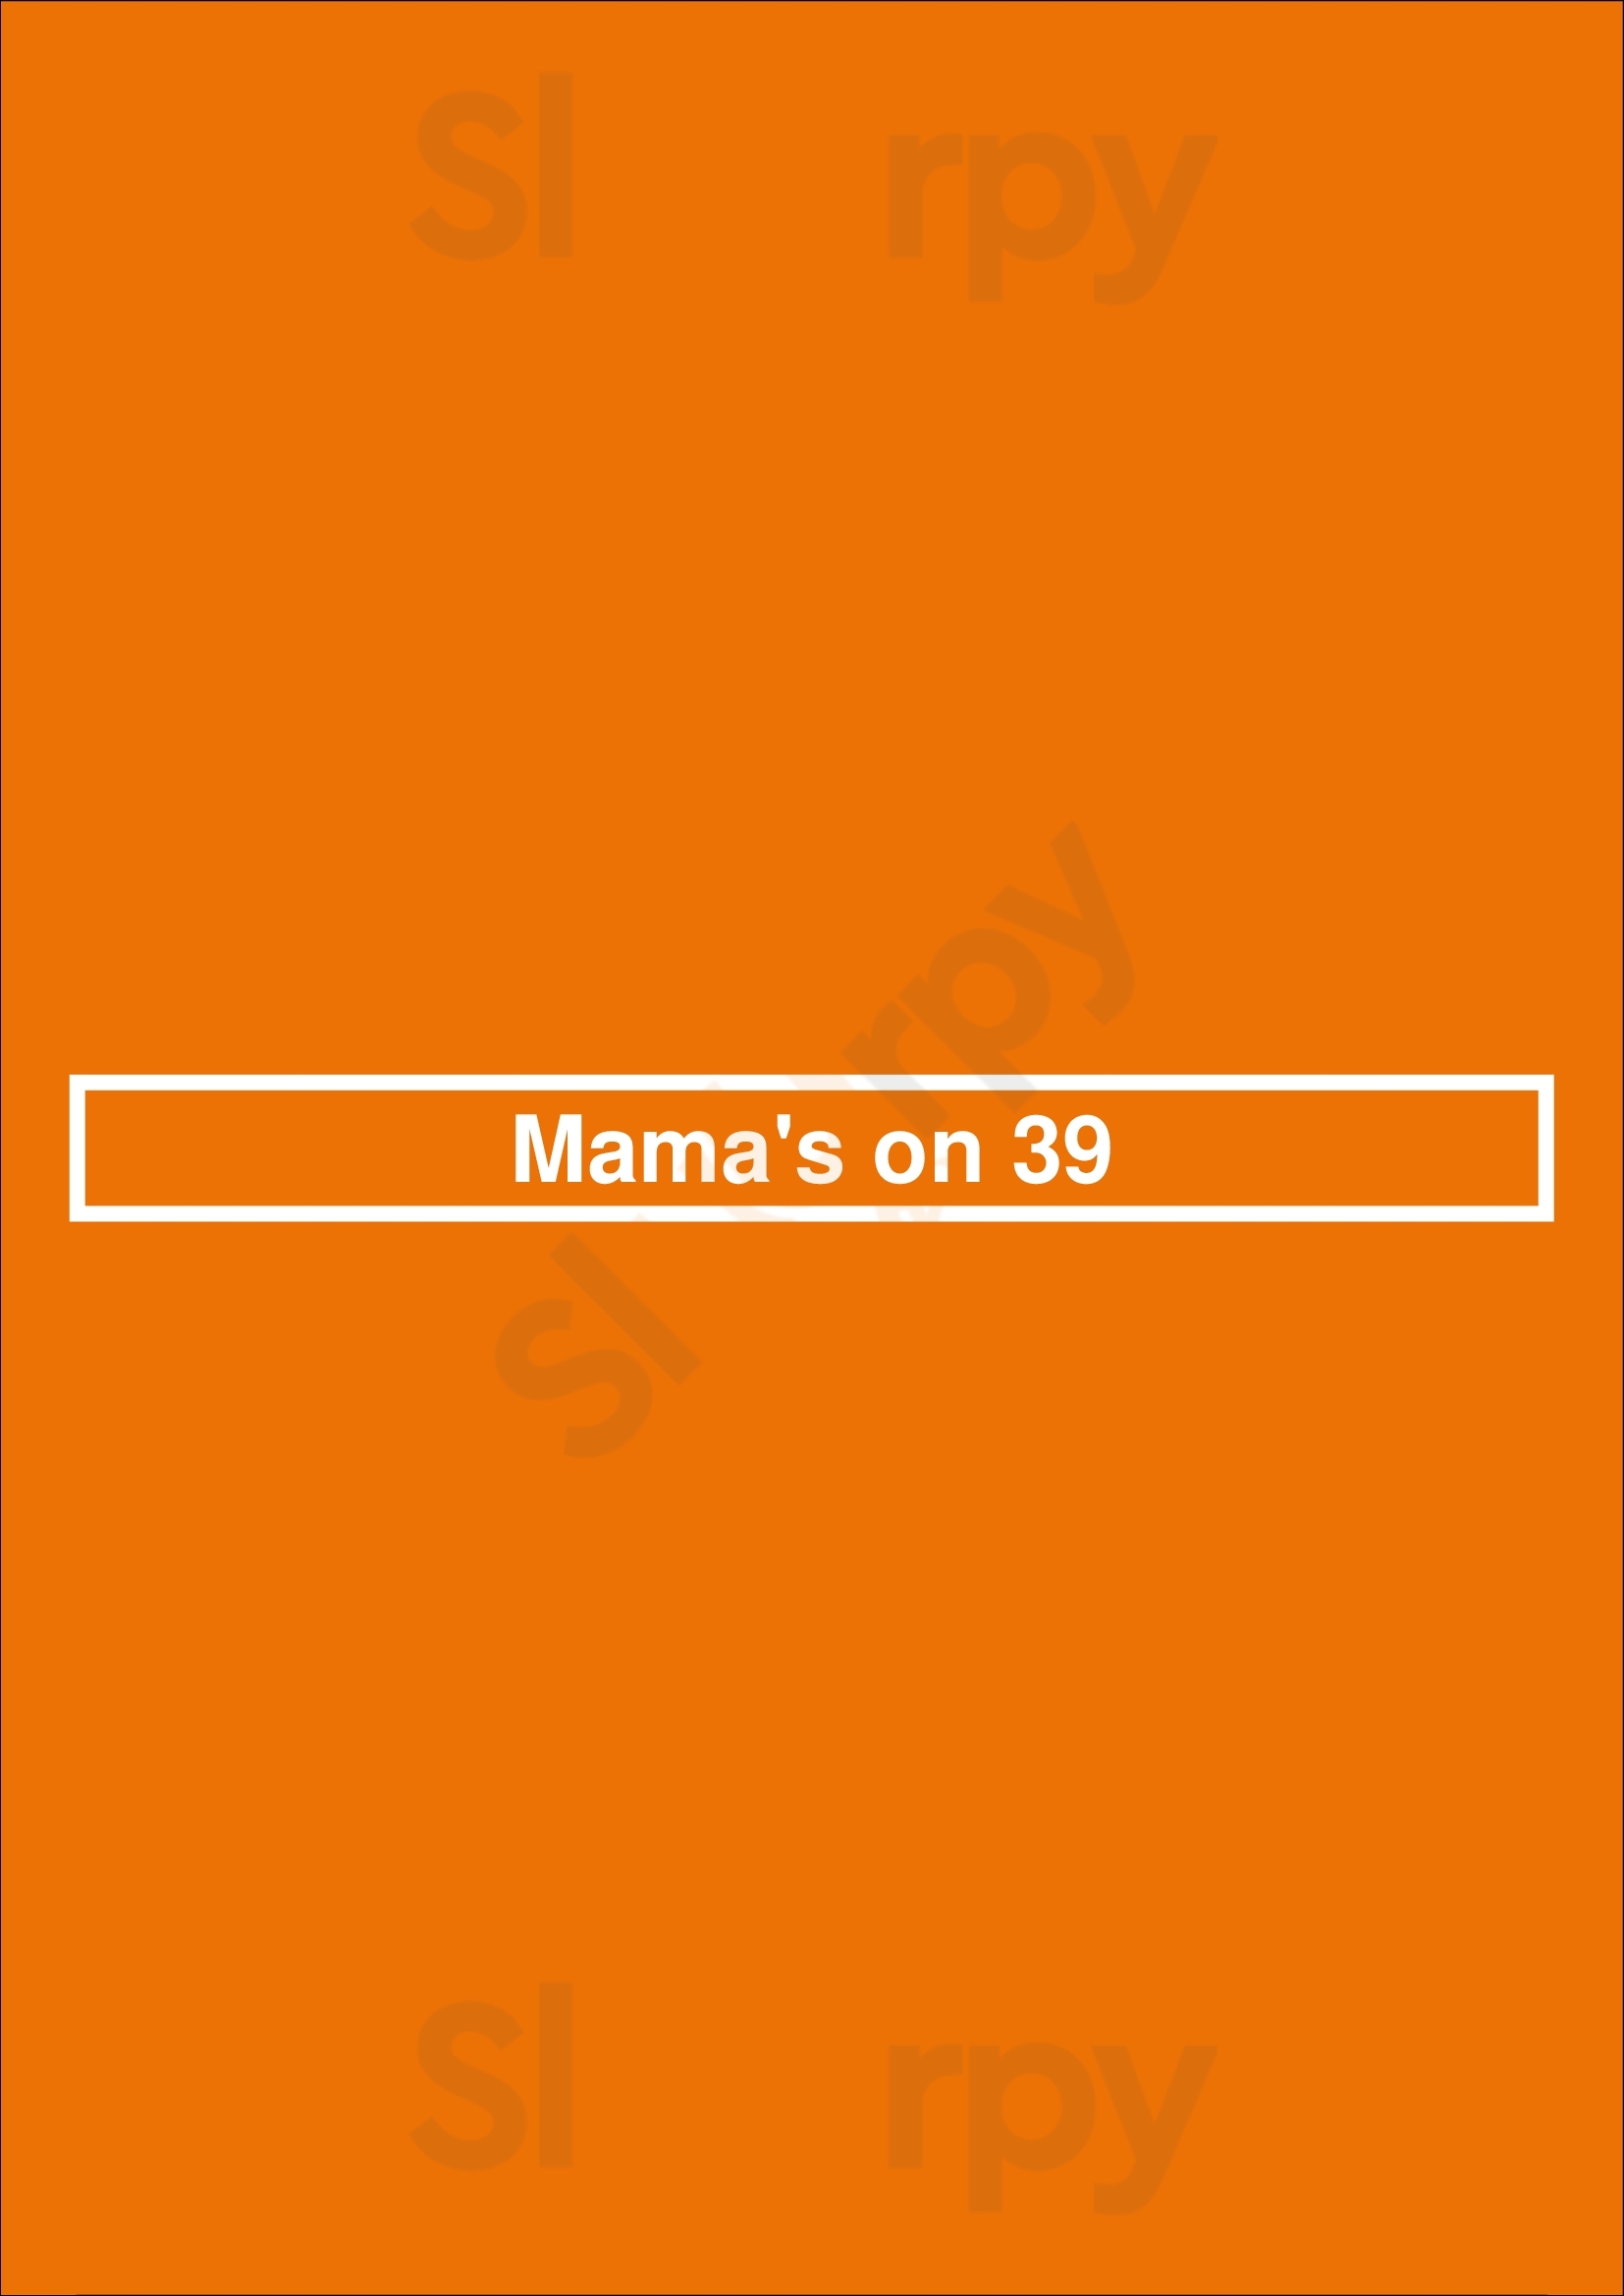 Mama's On 39 Huntington Beach Menu - 1